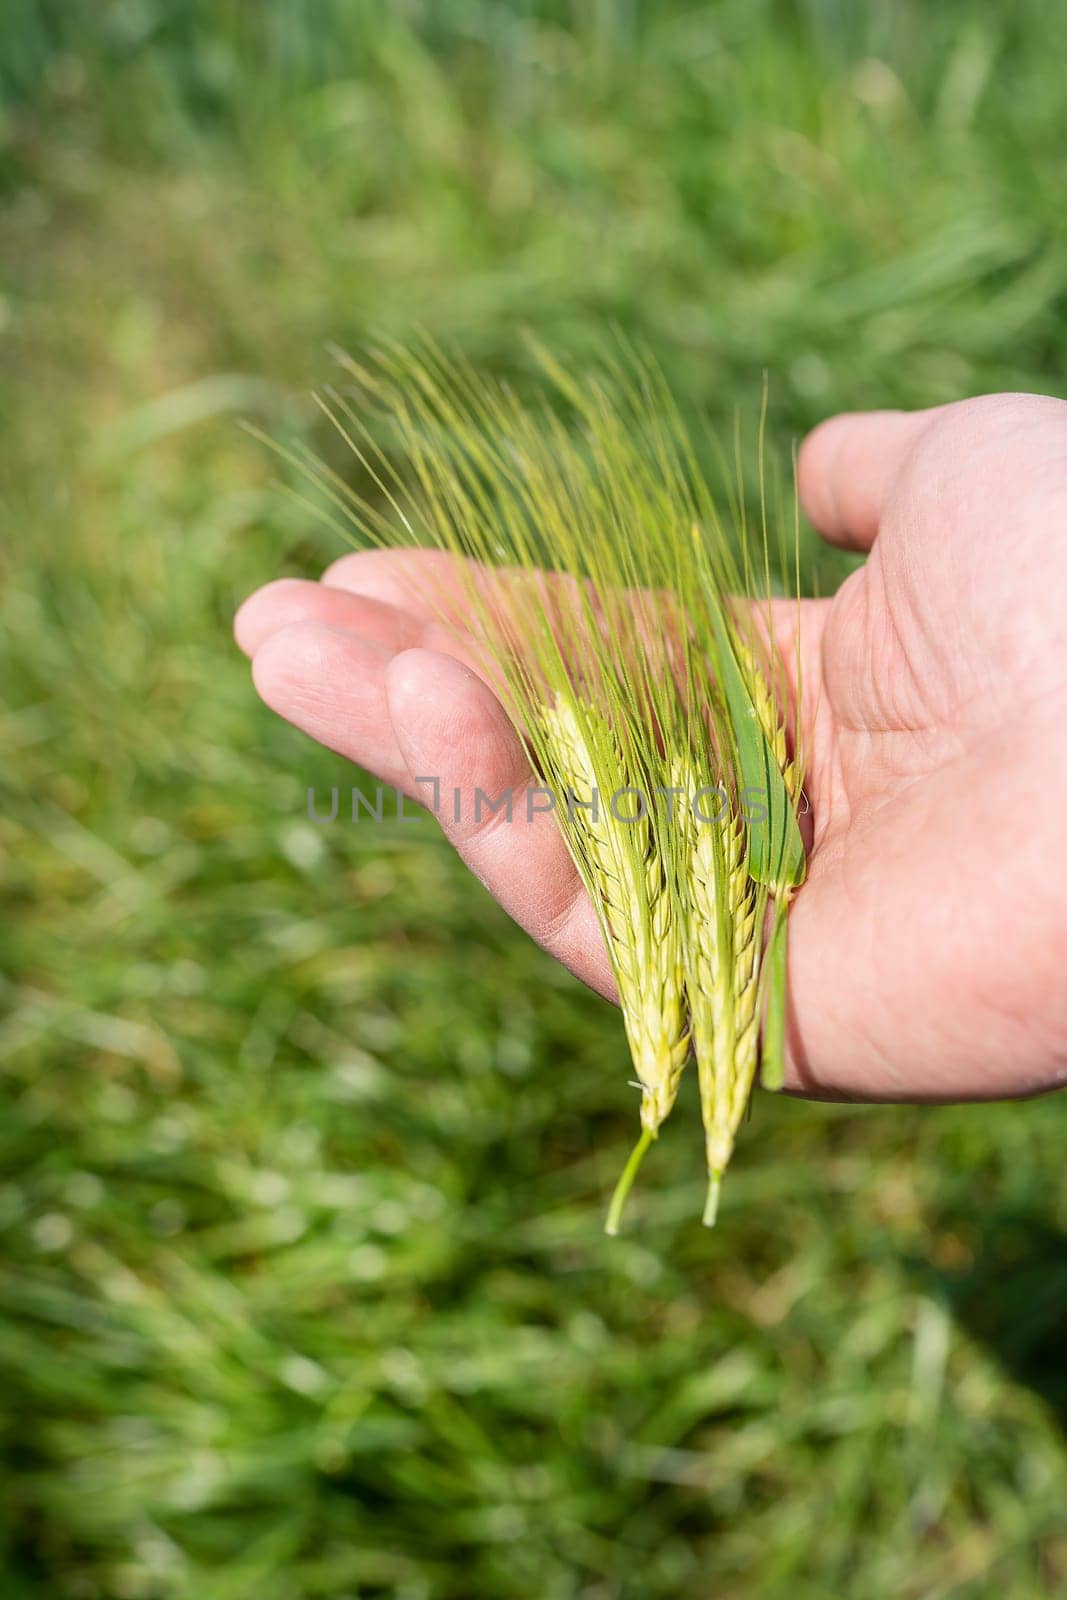 A farmer walking through the field checks the wheat crop. Wheat sprouts in a farmer's hand